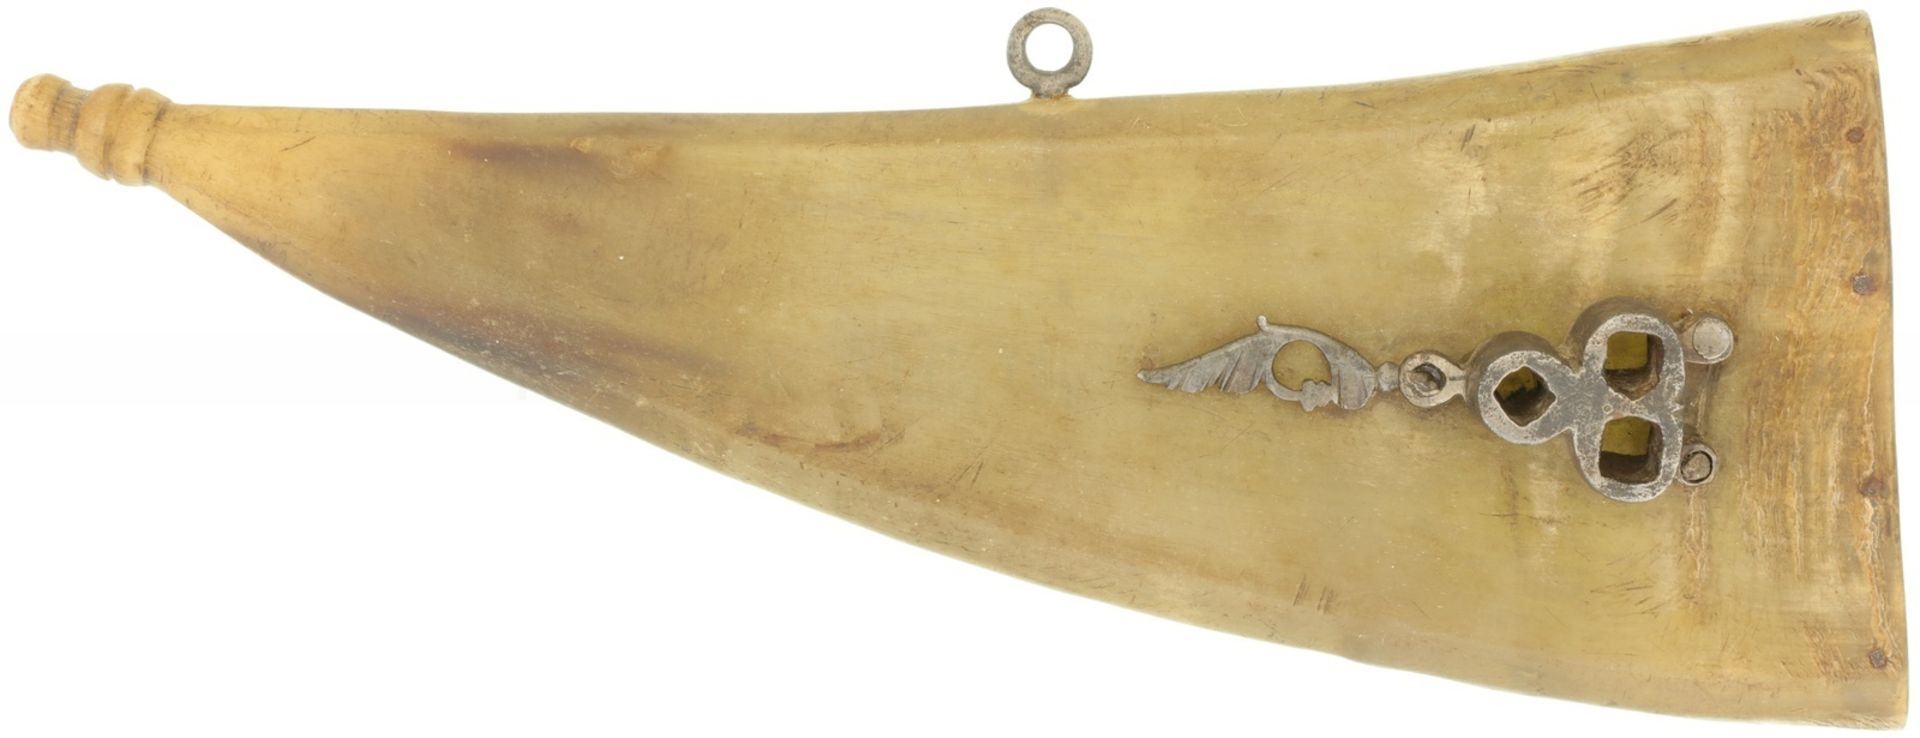 Pulverhorn mit Radschloss-Schlüssel, um 1600